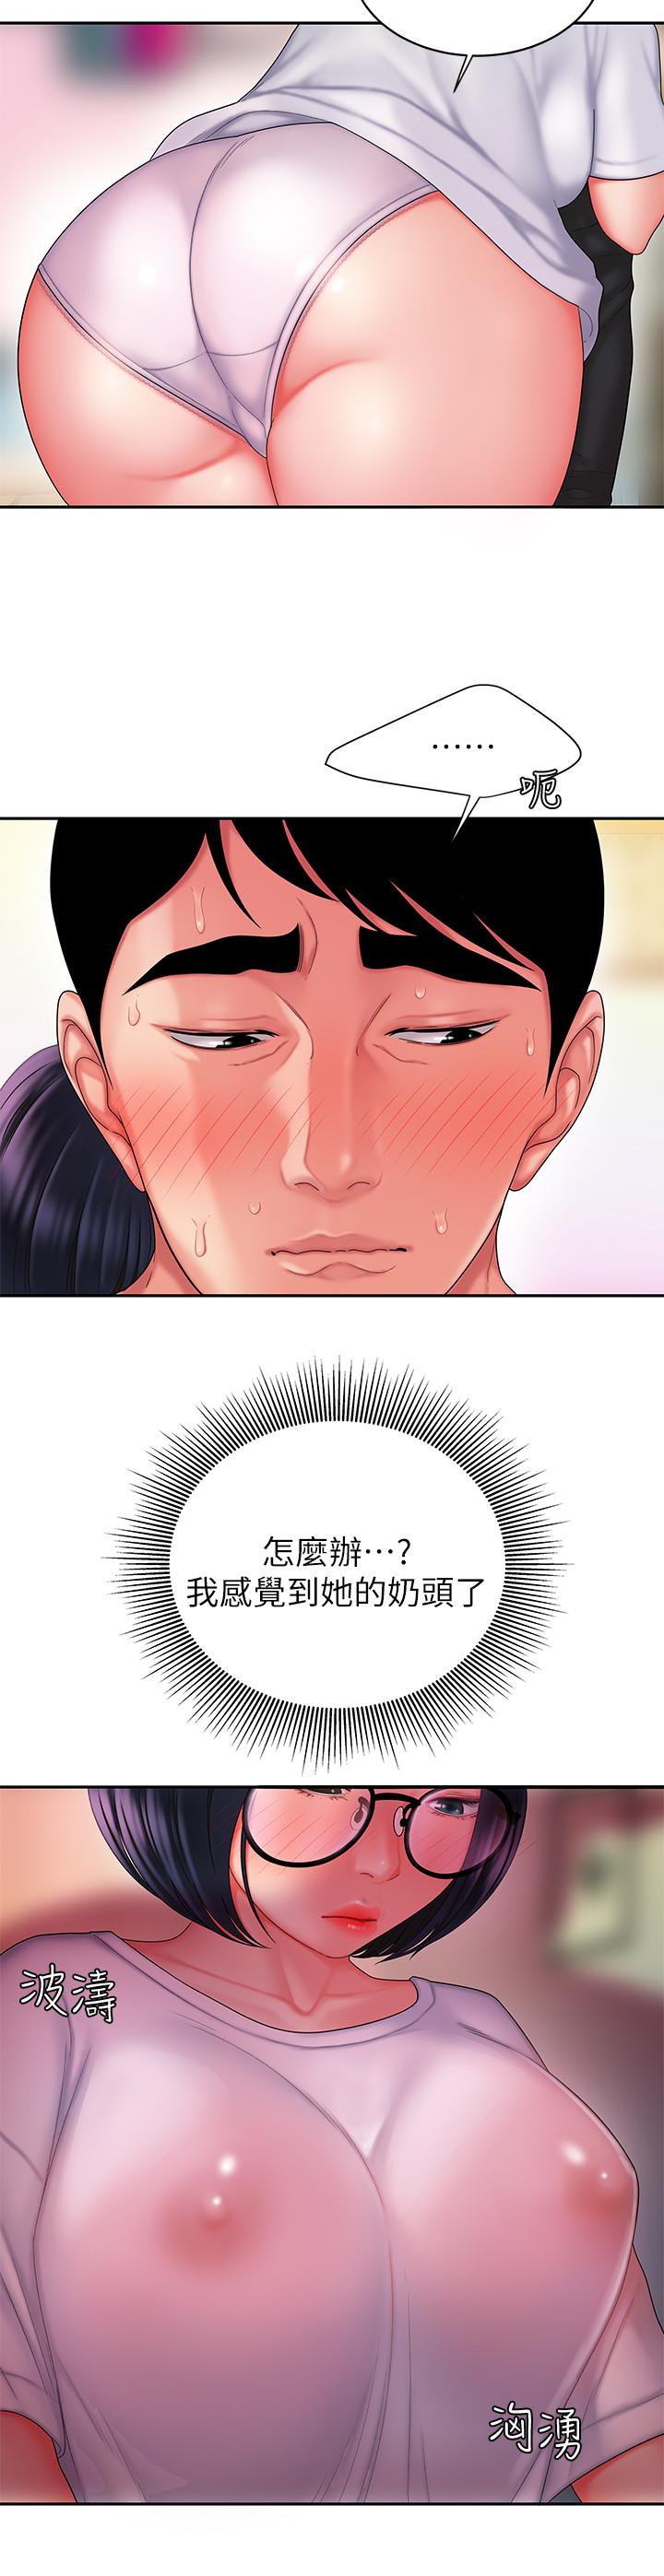 韩国污漫画 幸福外送員 第19话-让人变得愉悦的胸部 21